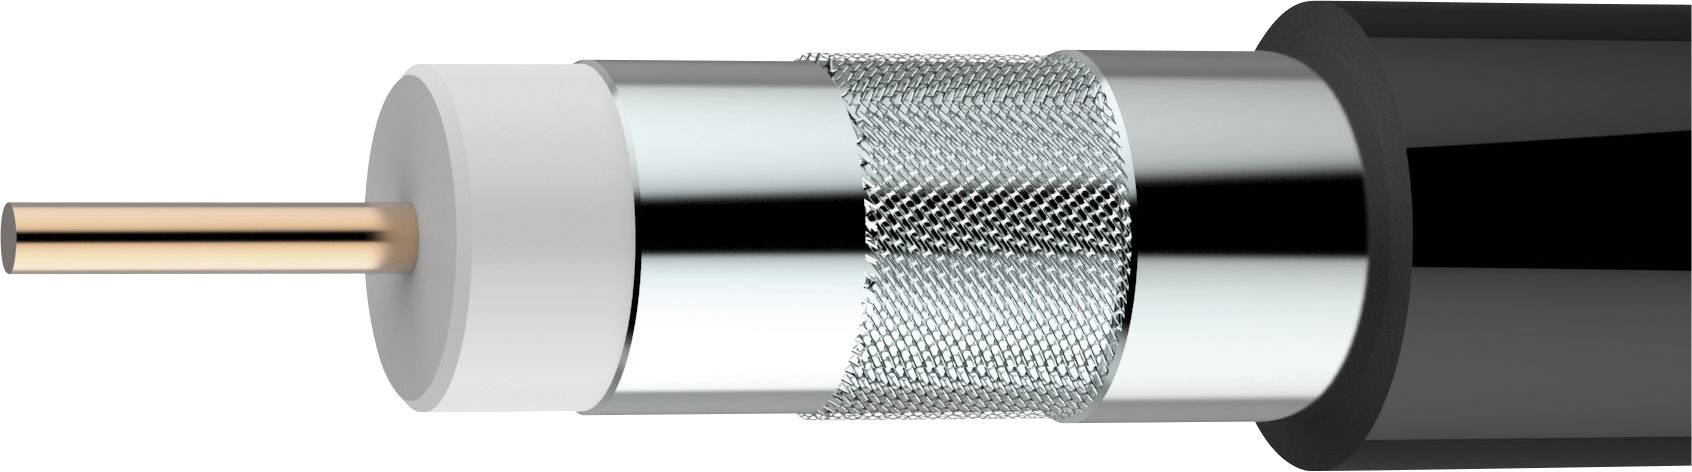 AXING Koaxialkabel Außen-Durchmesser: 6.80 mm 75 ¿ 100 dB Schwarz Axing SKB 395-13 Meterware